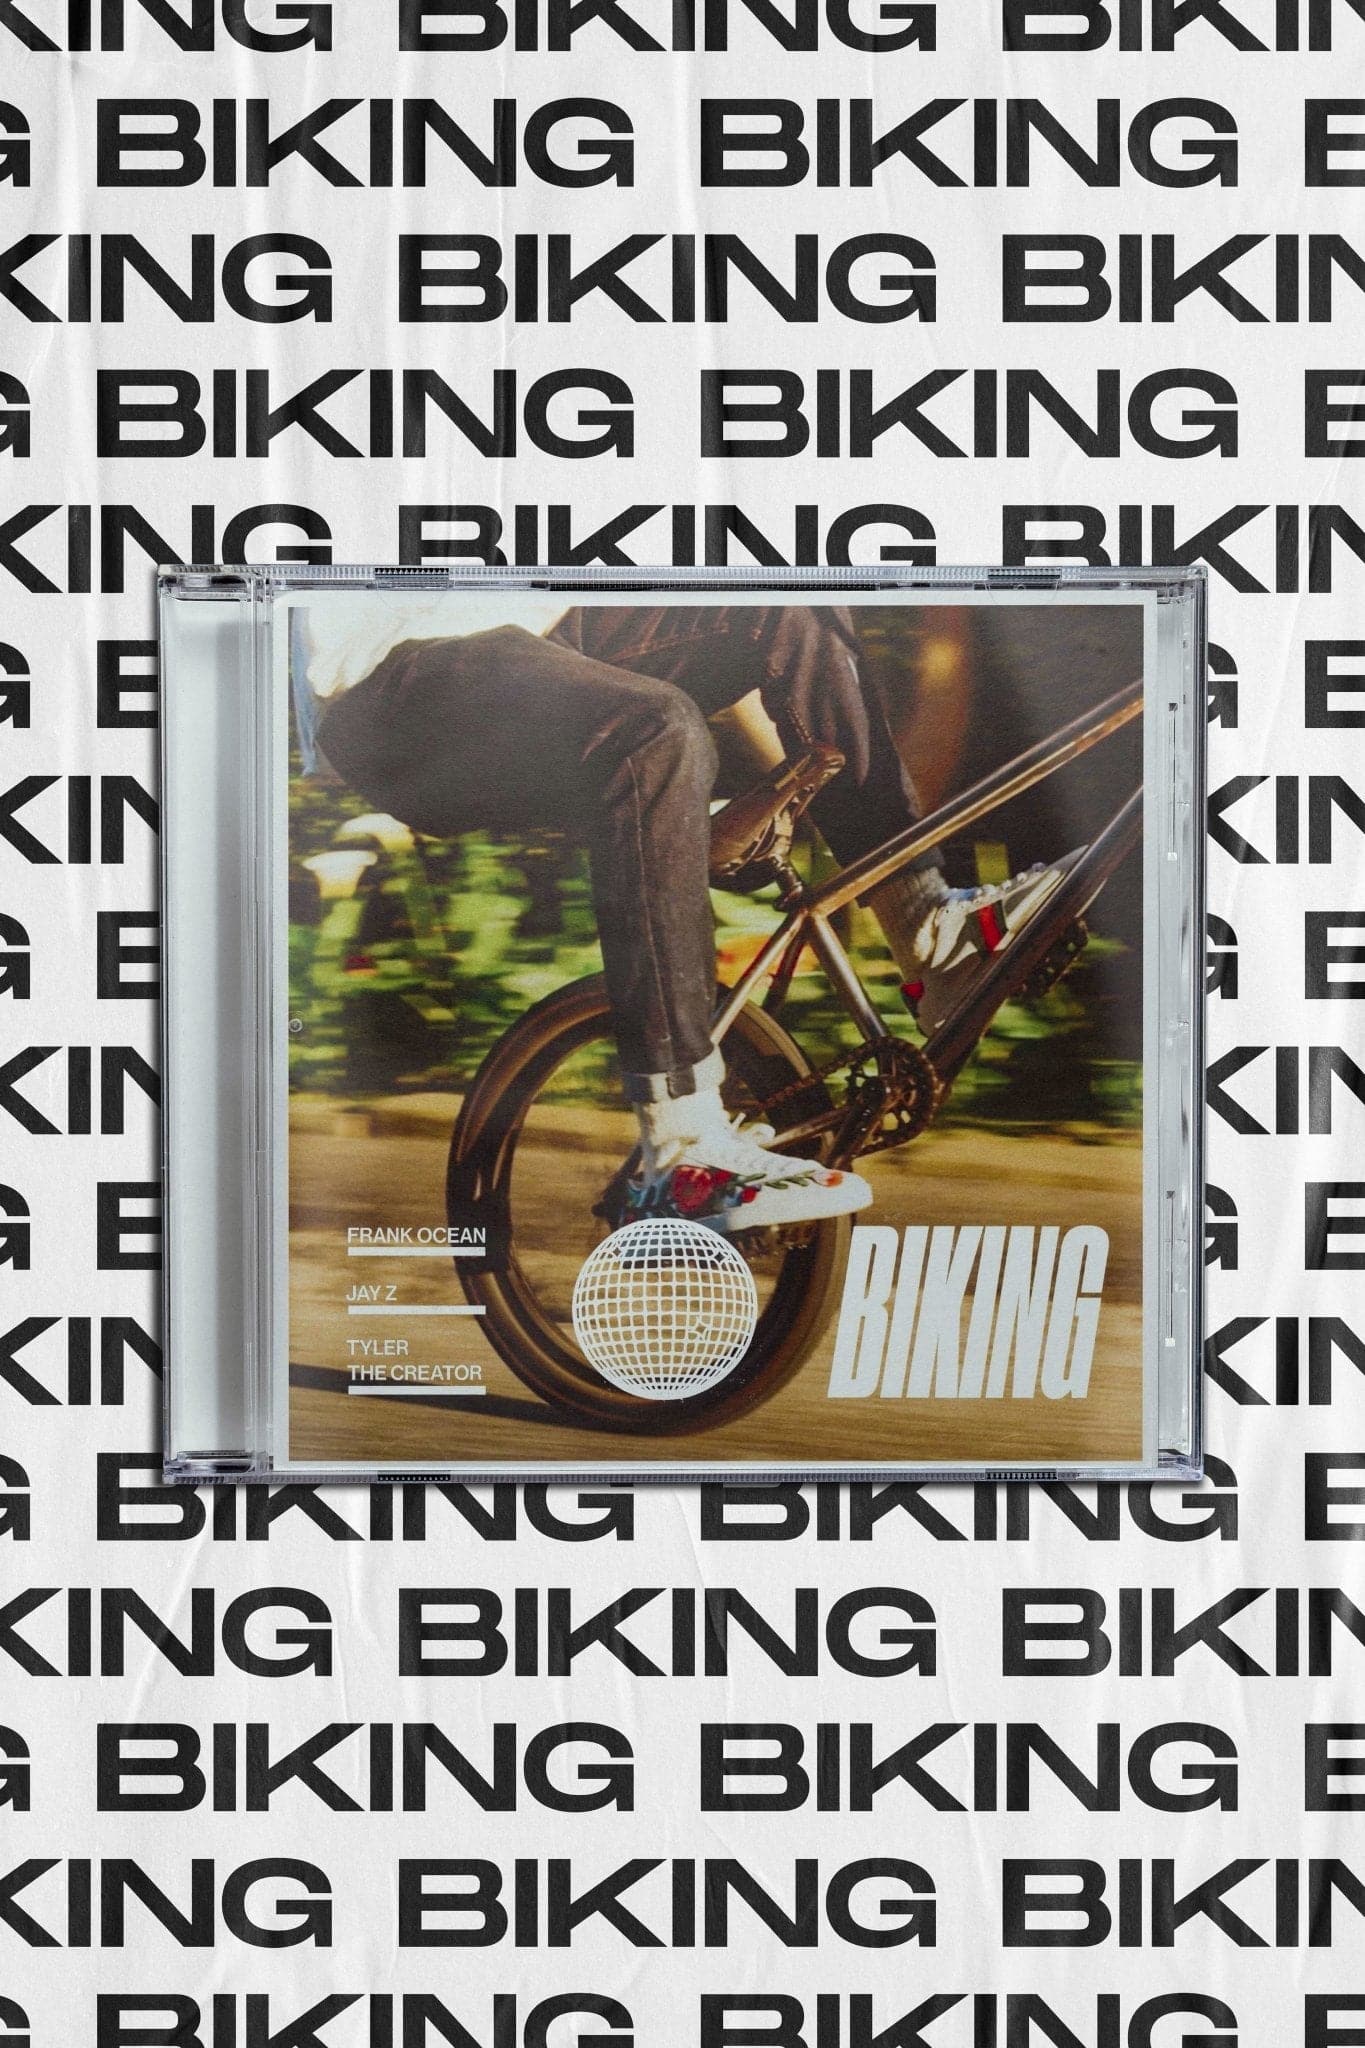 Frank Ocean 'Biking' Wallpaper Poster - Posters Plug